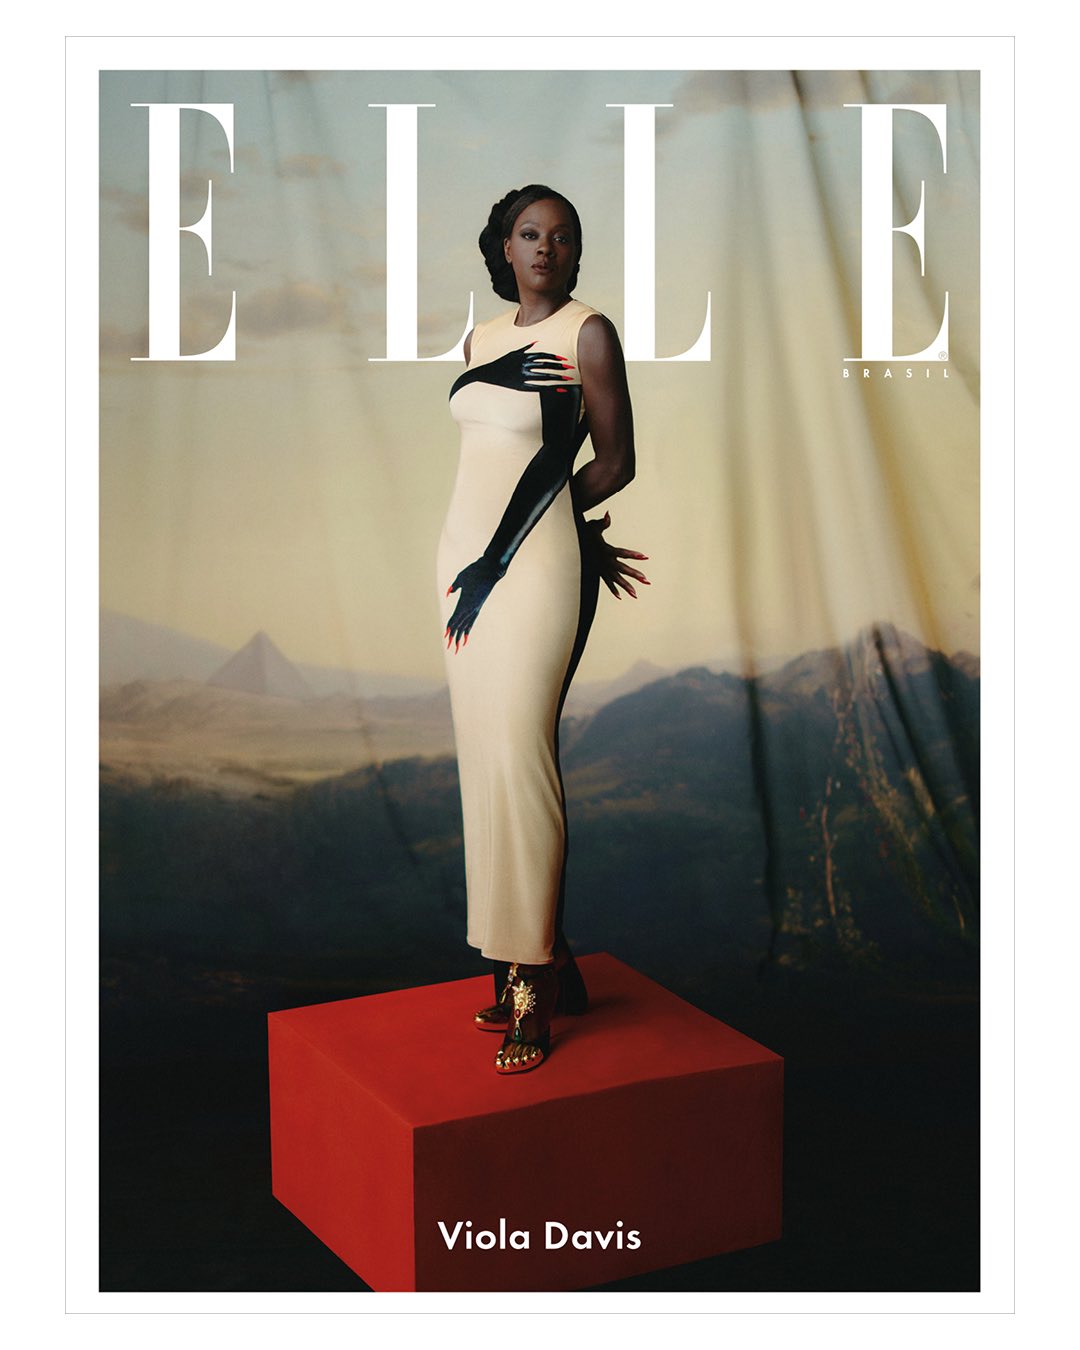 Film Updates on X: Academy Award winner Viola Davis for ELLE